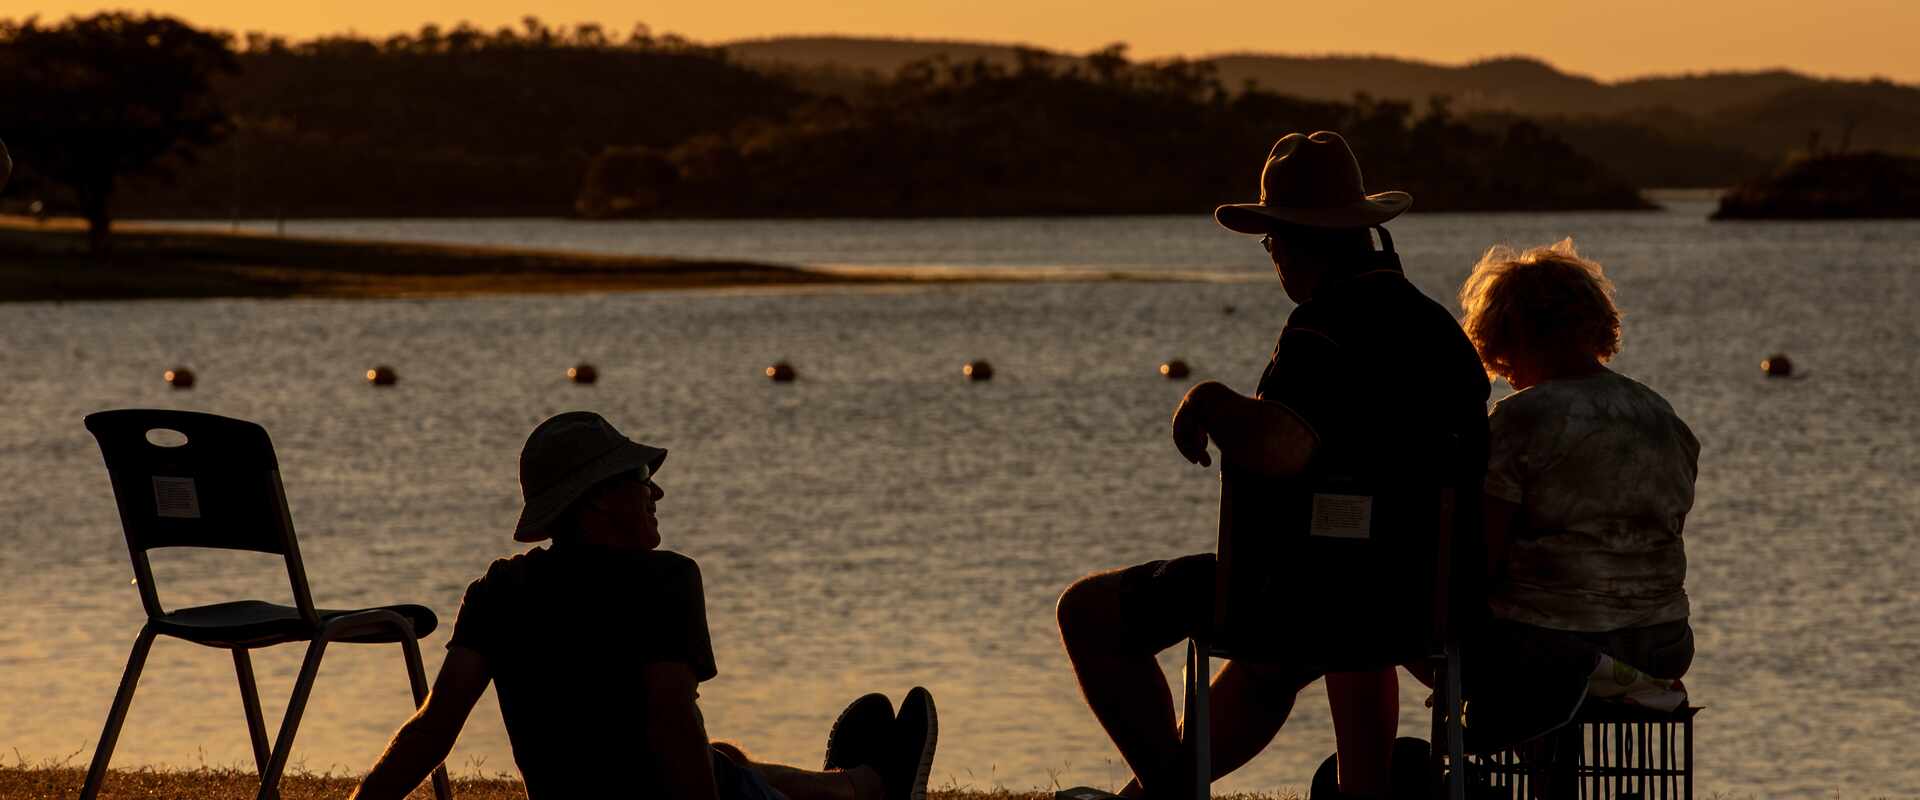 lake moondara sunset drinks mt isa, queensland, australia